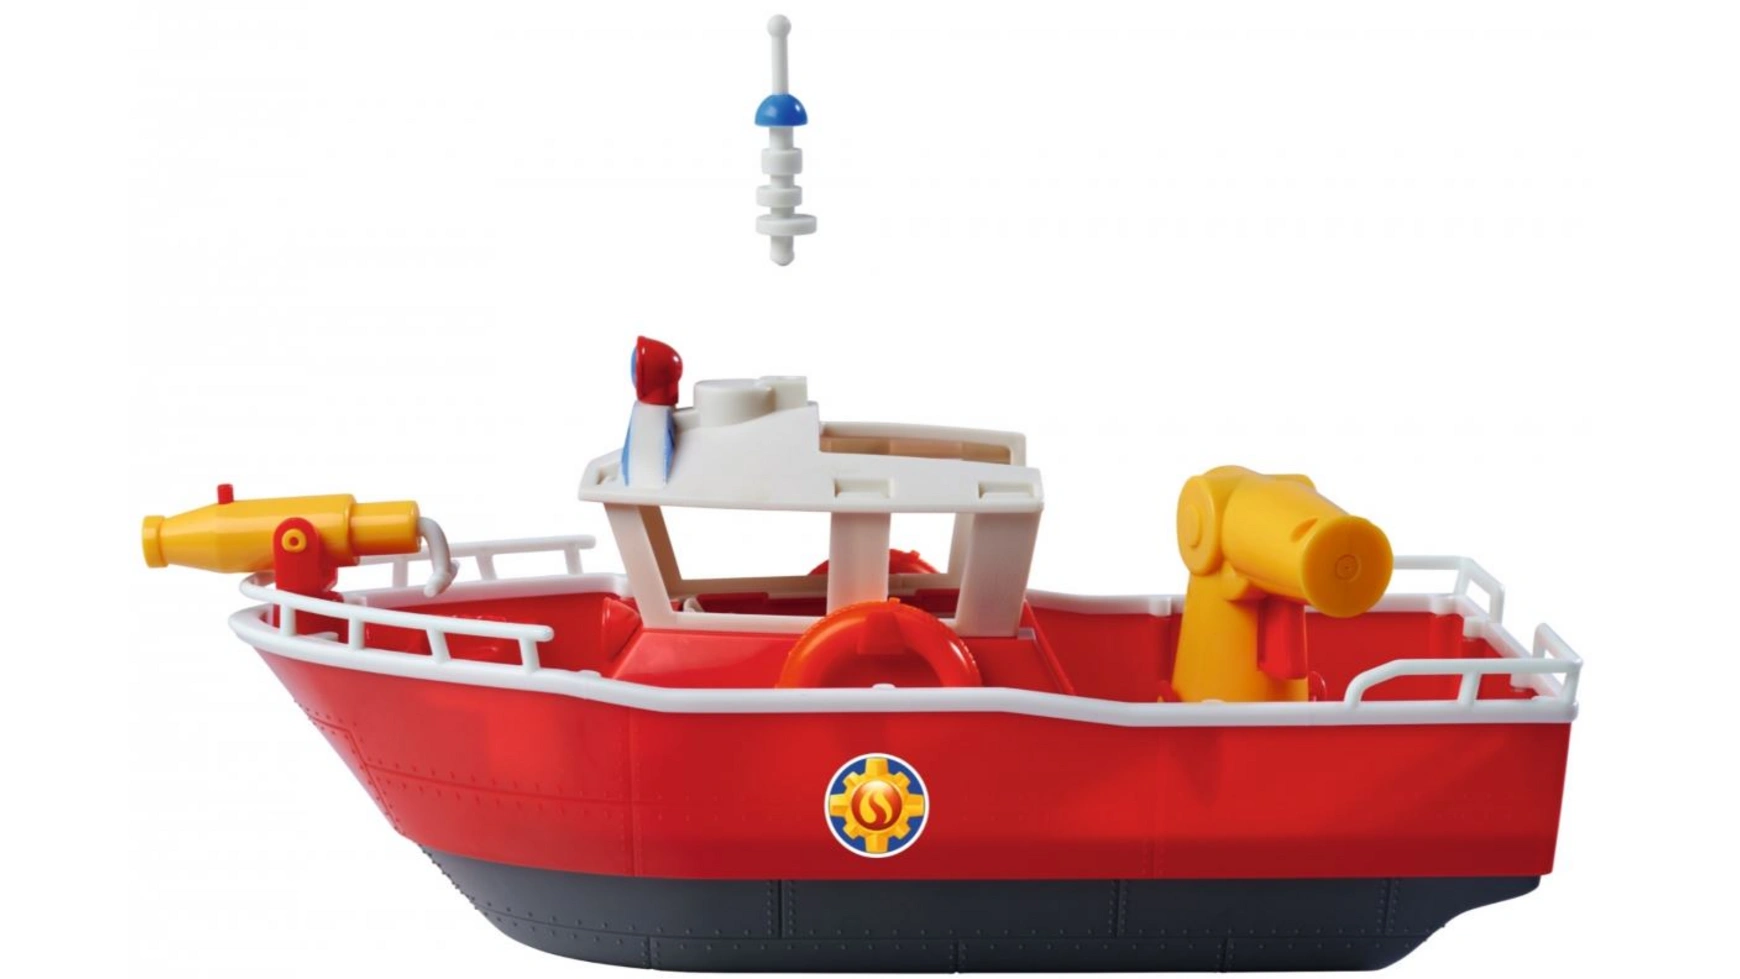 Пожарный сэм пожарная лодка сэма титана Simba пожарный автомобиль viking toys super jumbo 1511 красный желтый